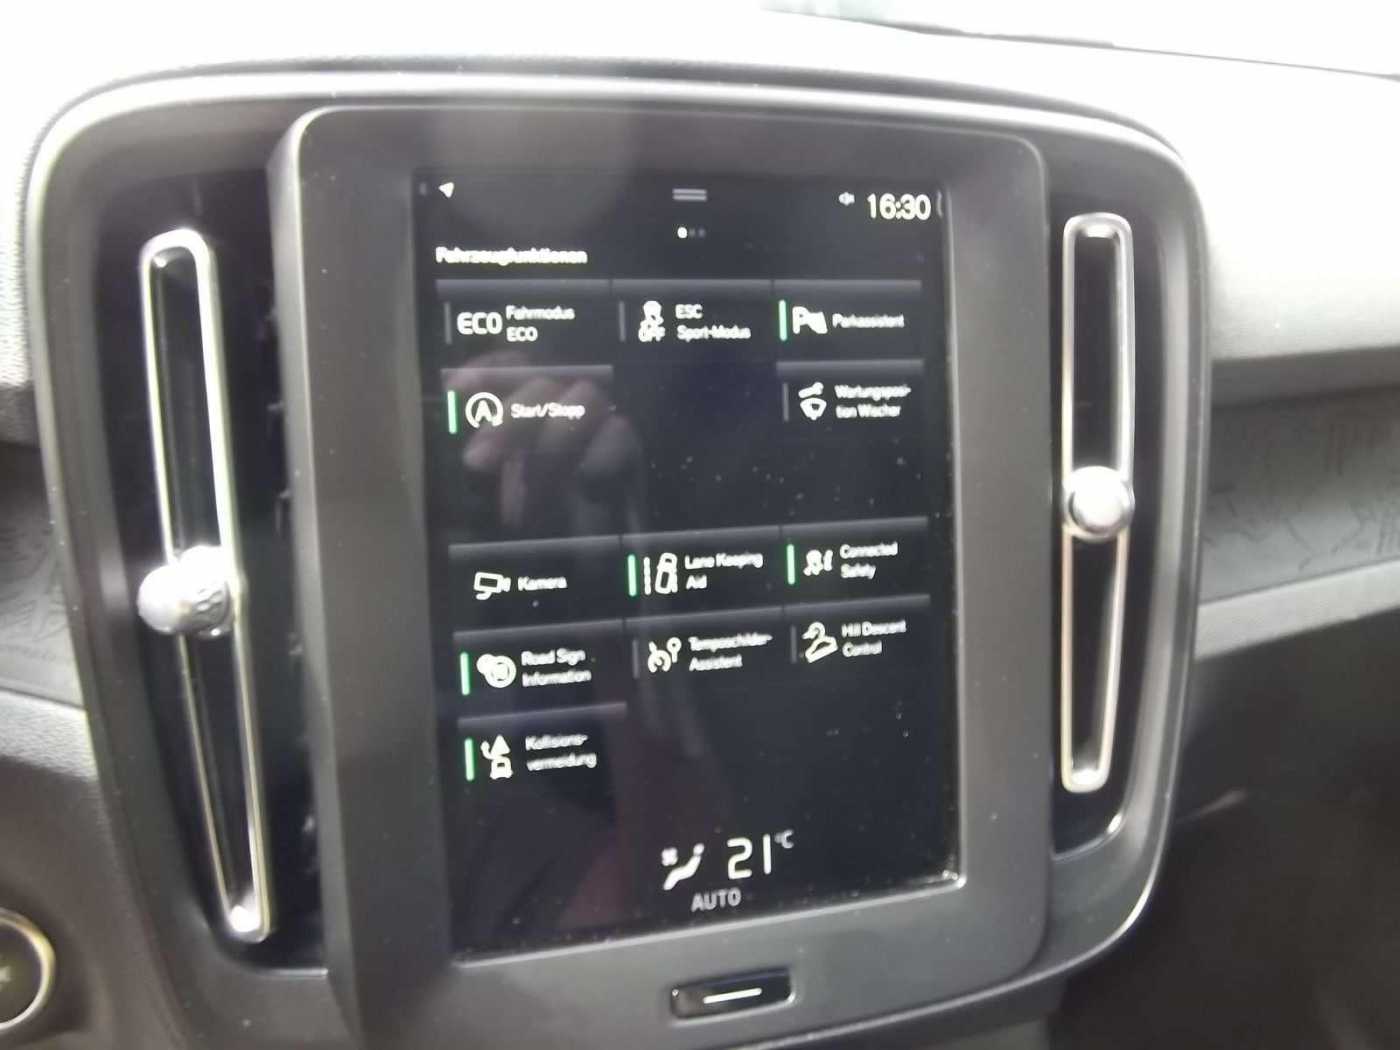 Volvo  Momentum Core 2WD